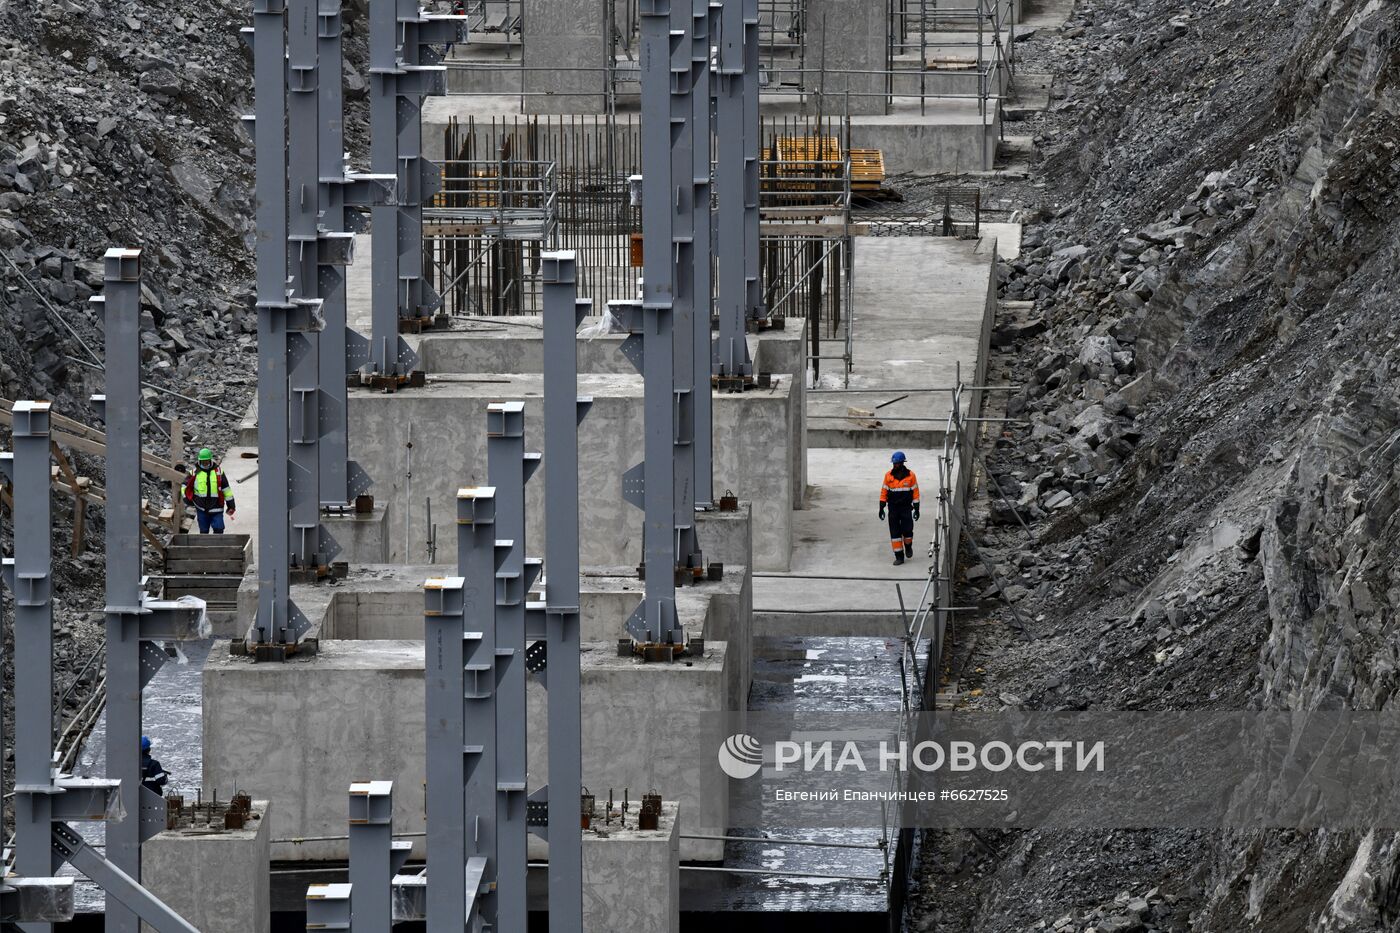 Строительство горно-металлургического комбината на Удоканском месторождении